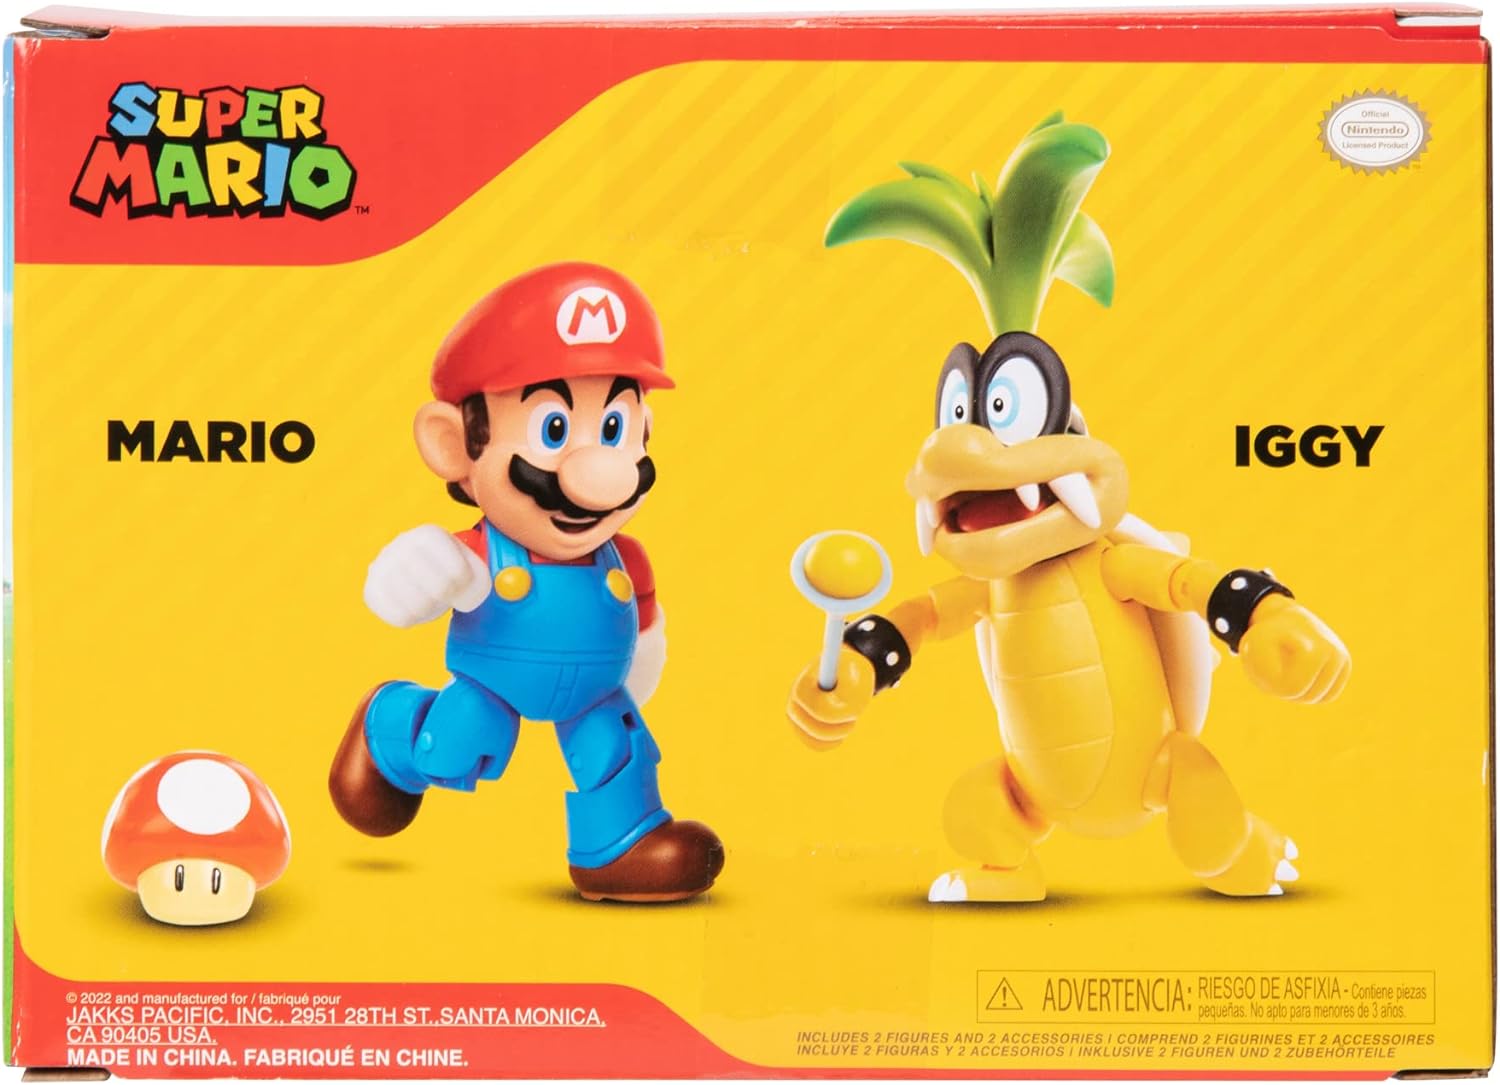 Super Mario: Mario VS Iggy Koopa 4" Action Figures